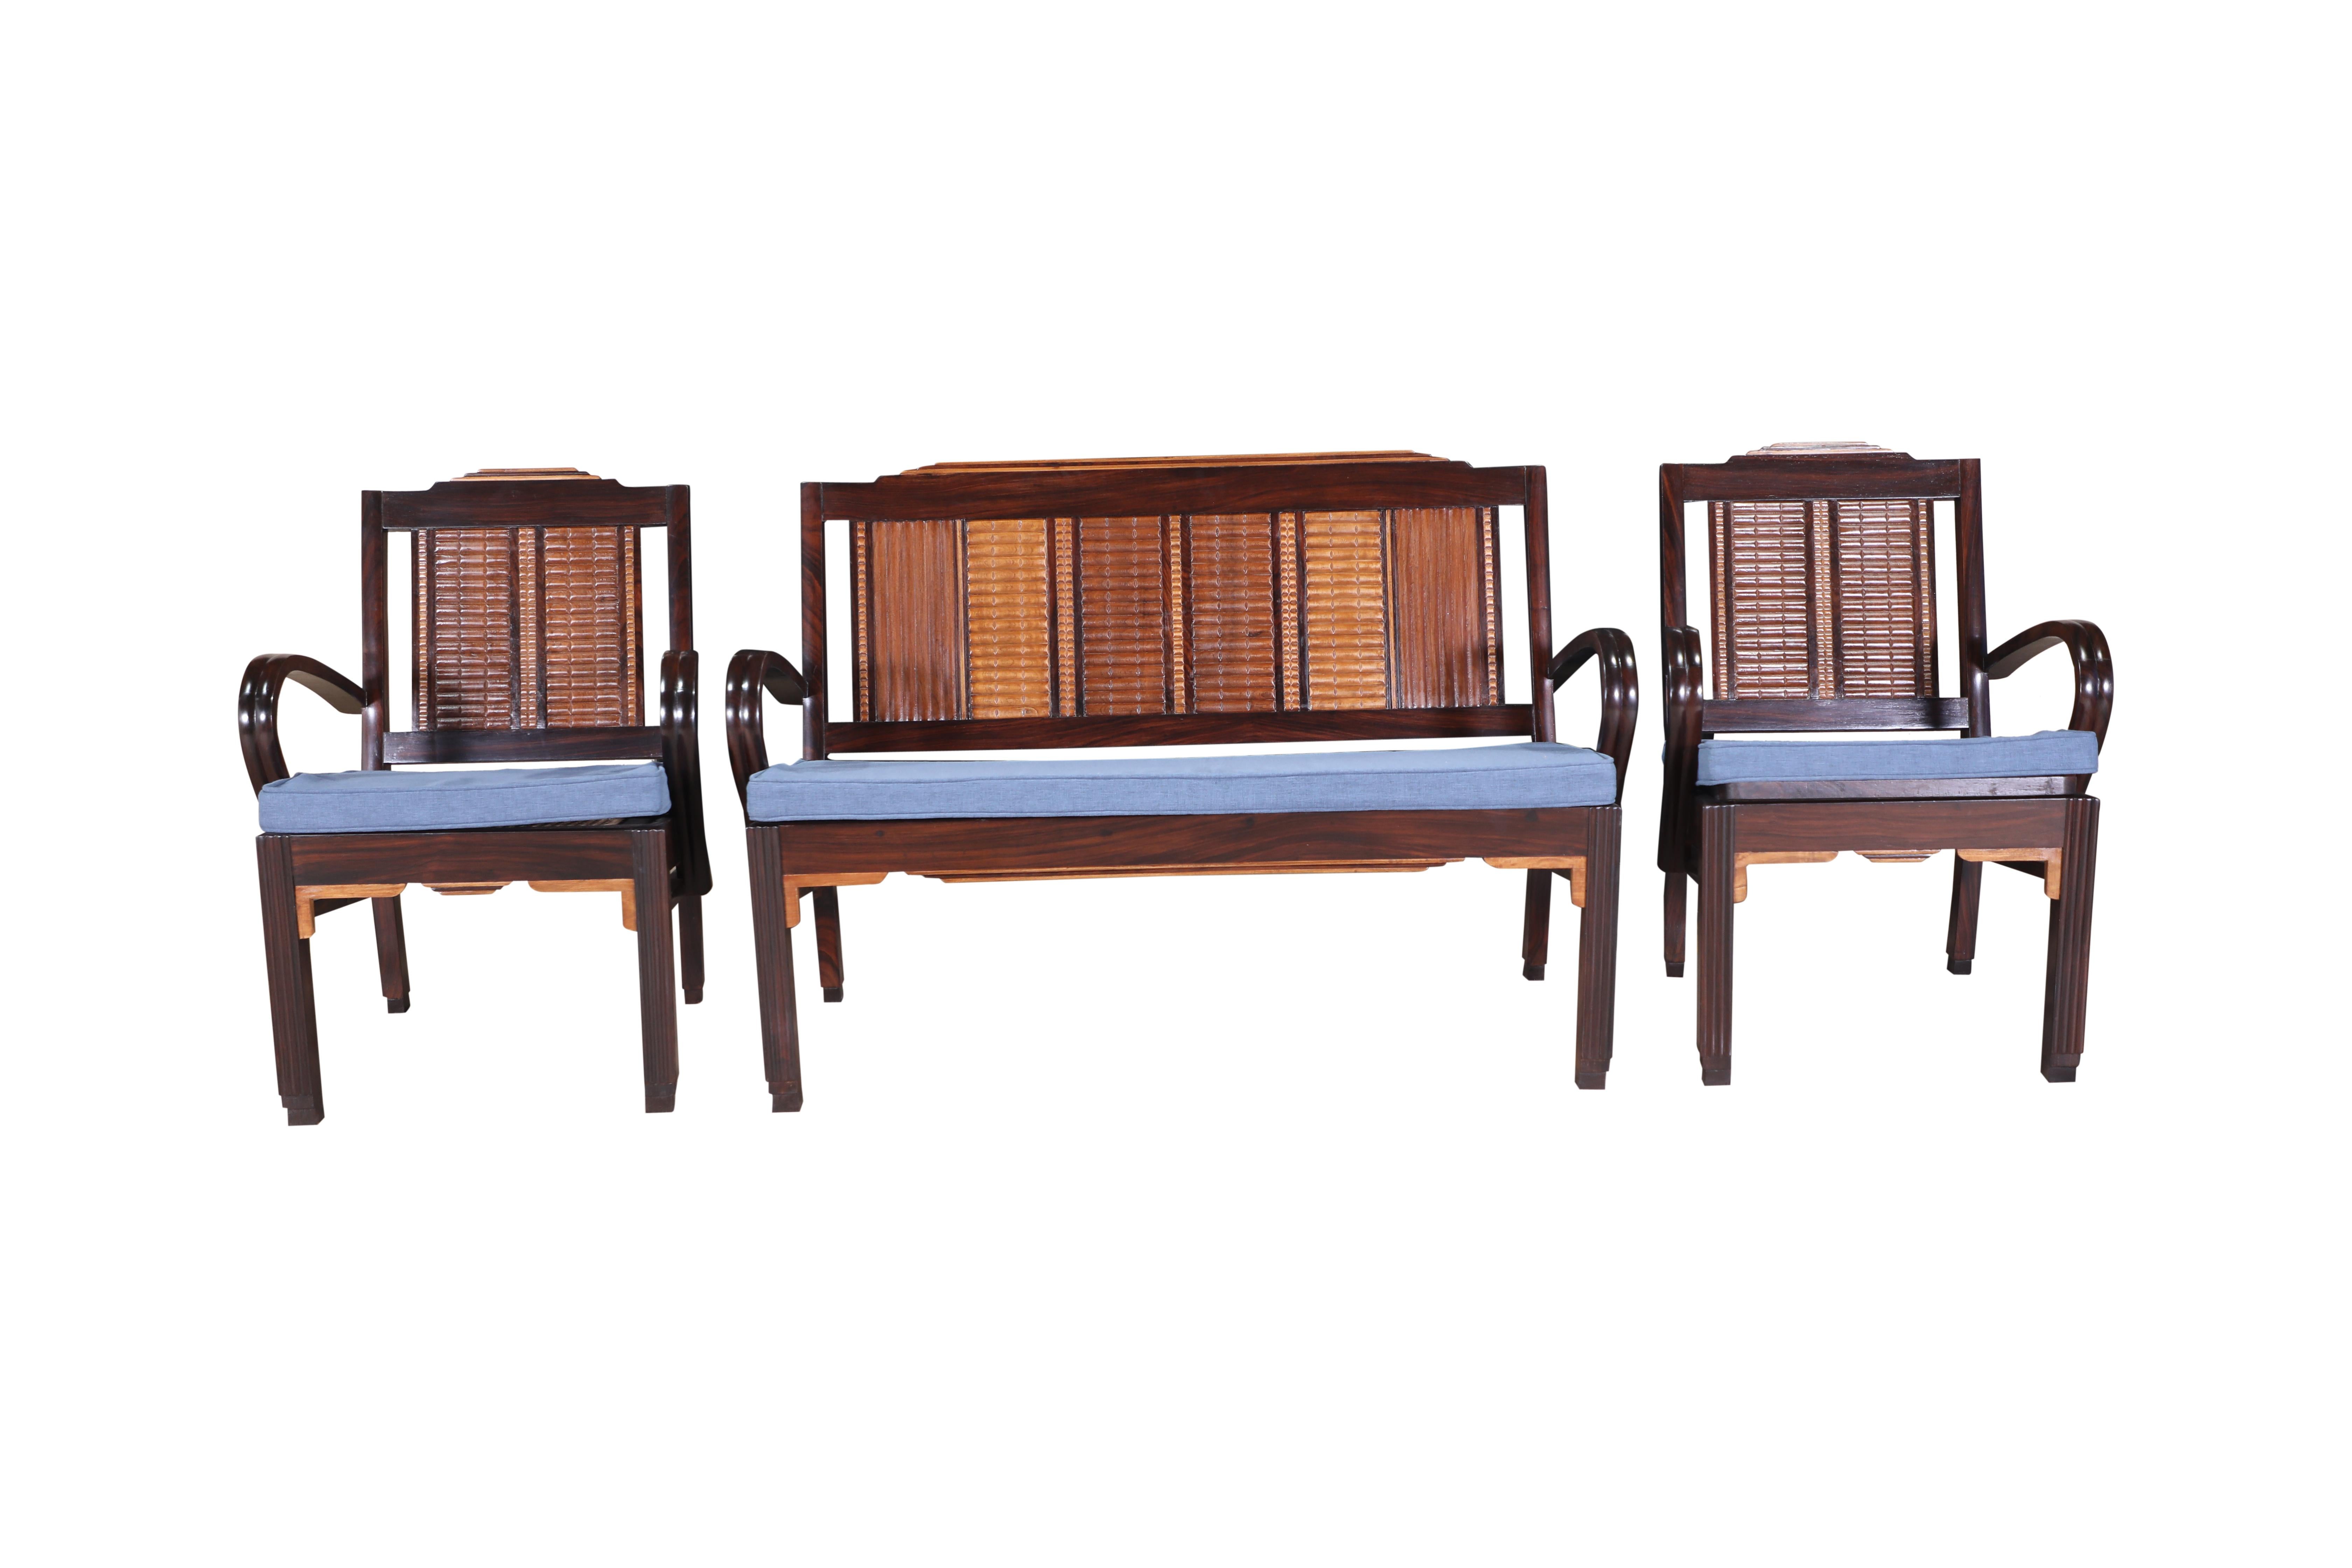 Une suite de trois pièces - un canapé et une paire de chaises longues.  Teck, bois de satin et bois de rose sculptés avec sièges cannés.  La bastonnade est refaite selon un schéma très serré.  Les coussins ont été fabriqués sur mesure avec un tissu